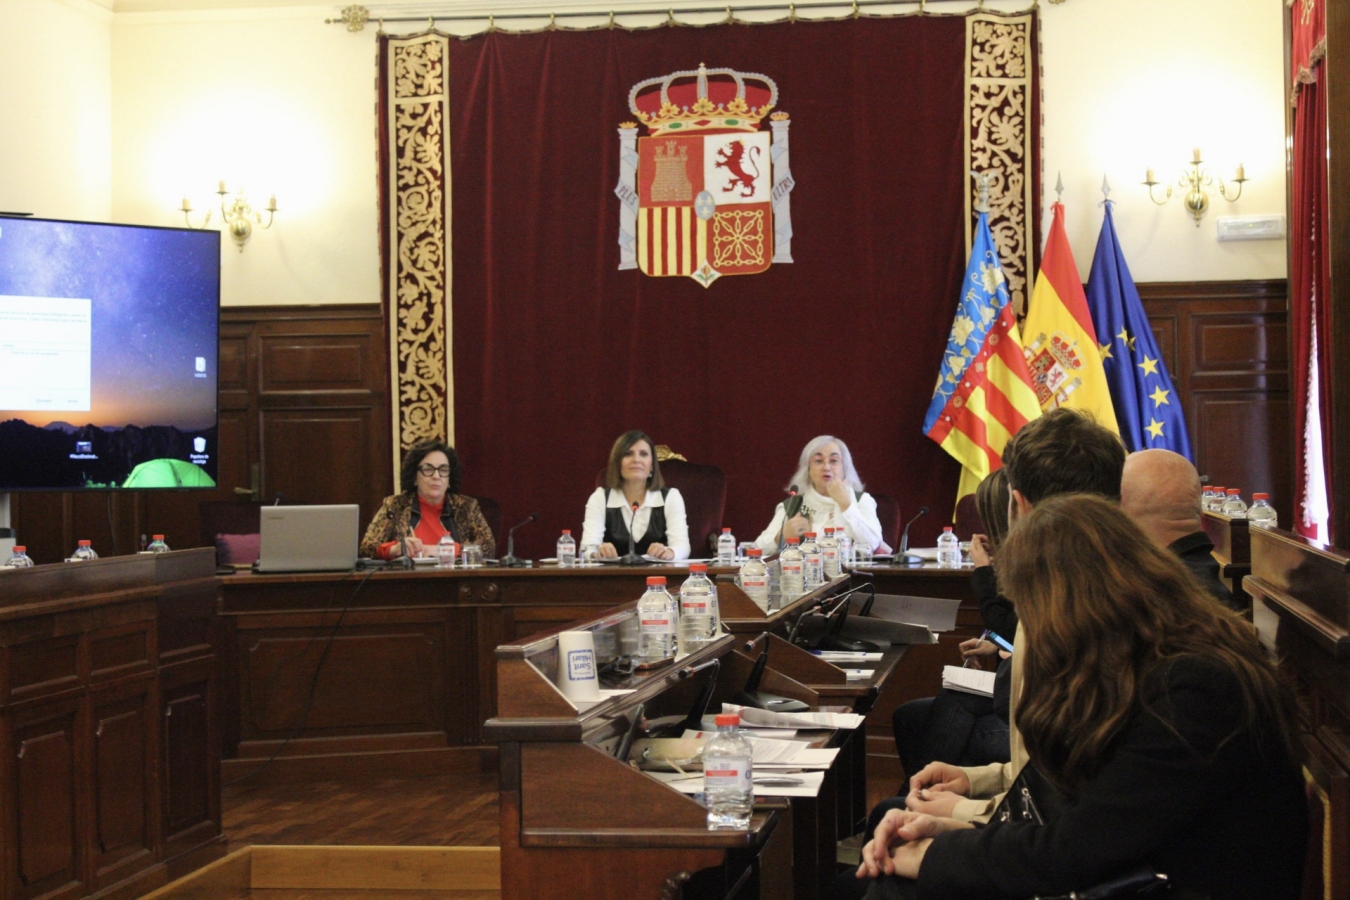 La Diputación de Castellón reafirma su compromiso con la igualdad y celebra la primera comisión de seguimiento del Plan de Igualdad tras renovar su composición